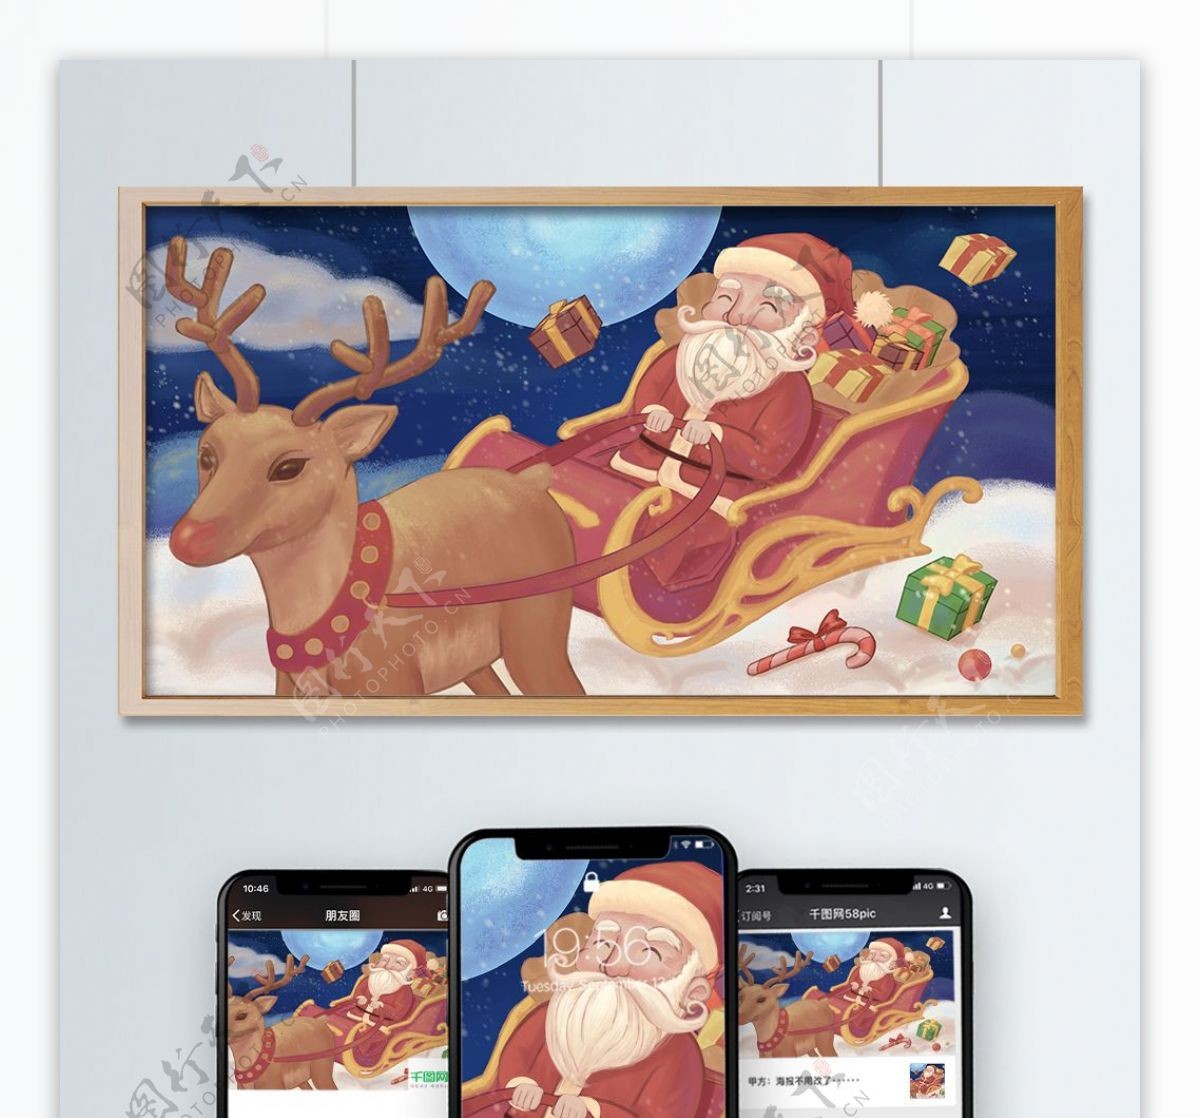 平安夜圣诞老人驯鹿雪橇节日手绘插画